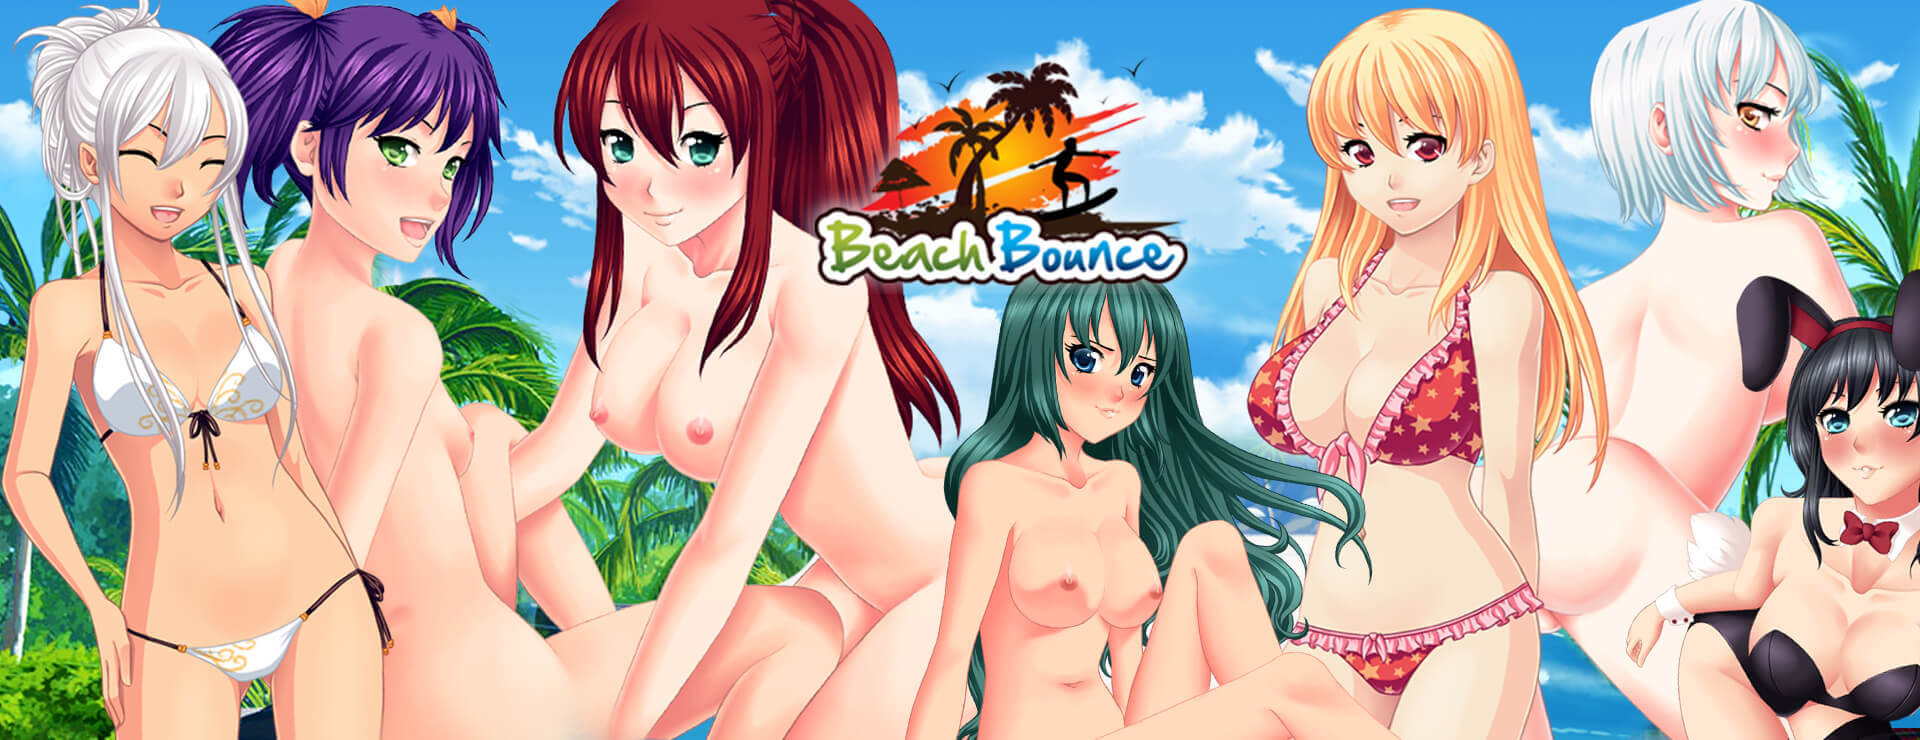 Beach Bounce - Japanisches Adventure Spiel